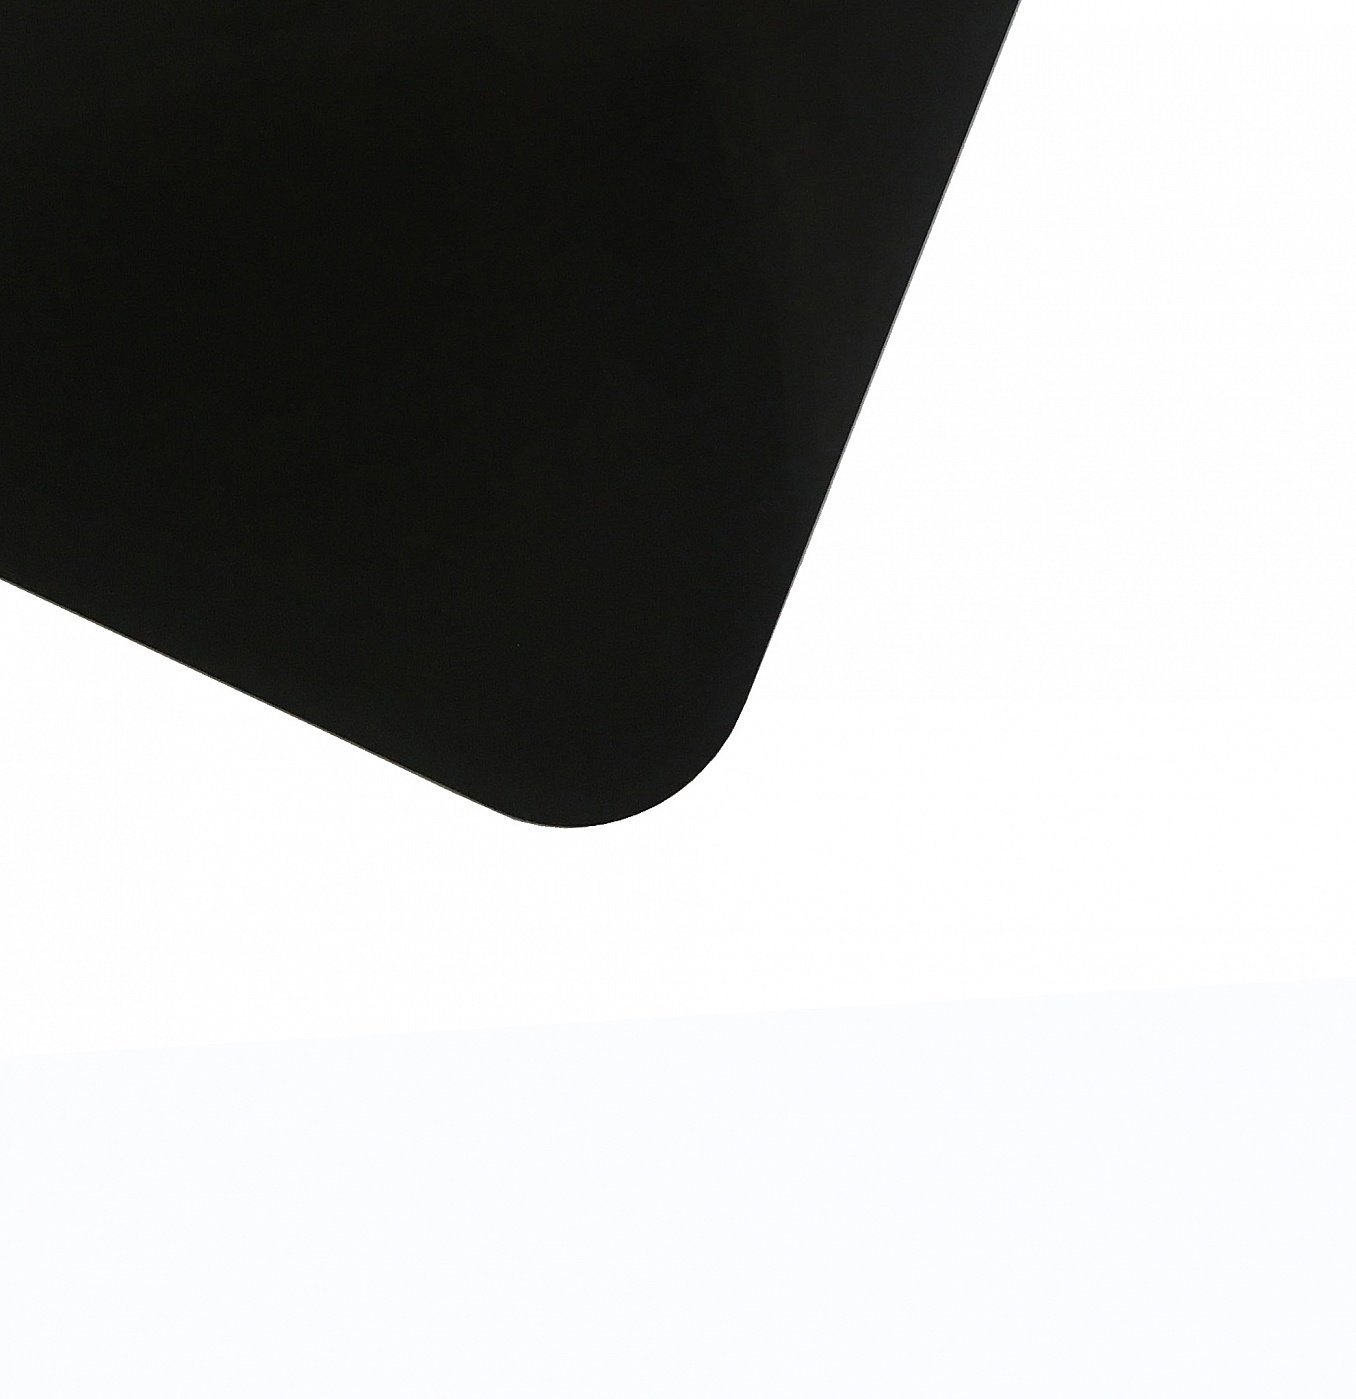 Планшет для пленэра из оргстекла 3 мм, под лист размера А4, цвет черный планшет обучающий магнитное рисование оранжевый 375 отверстий